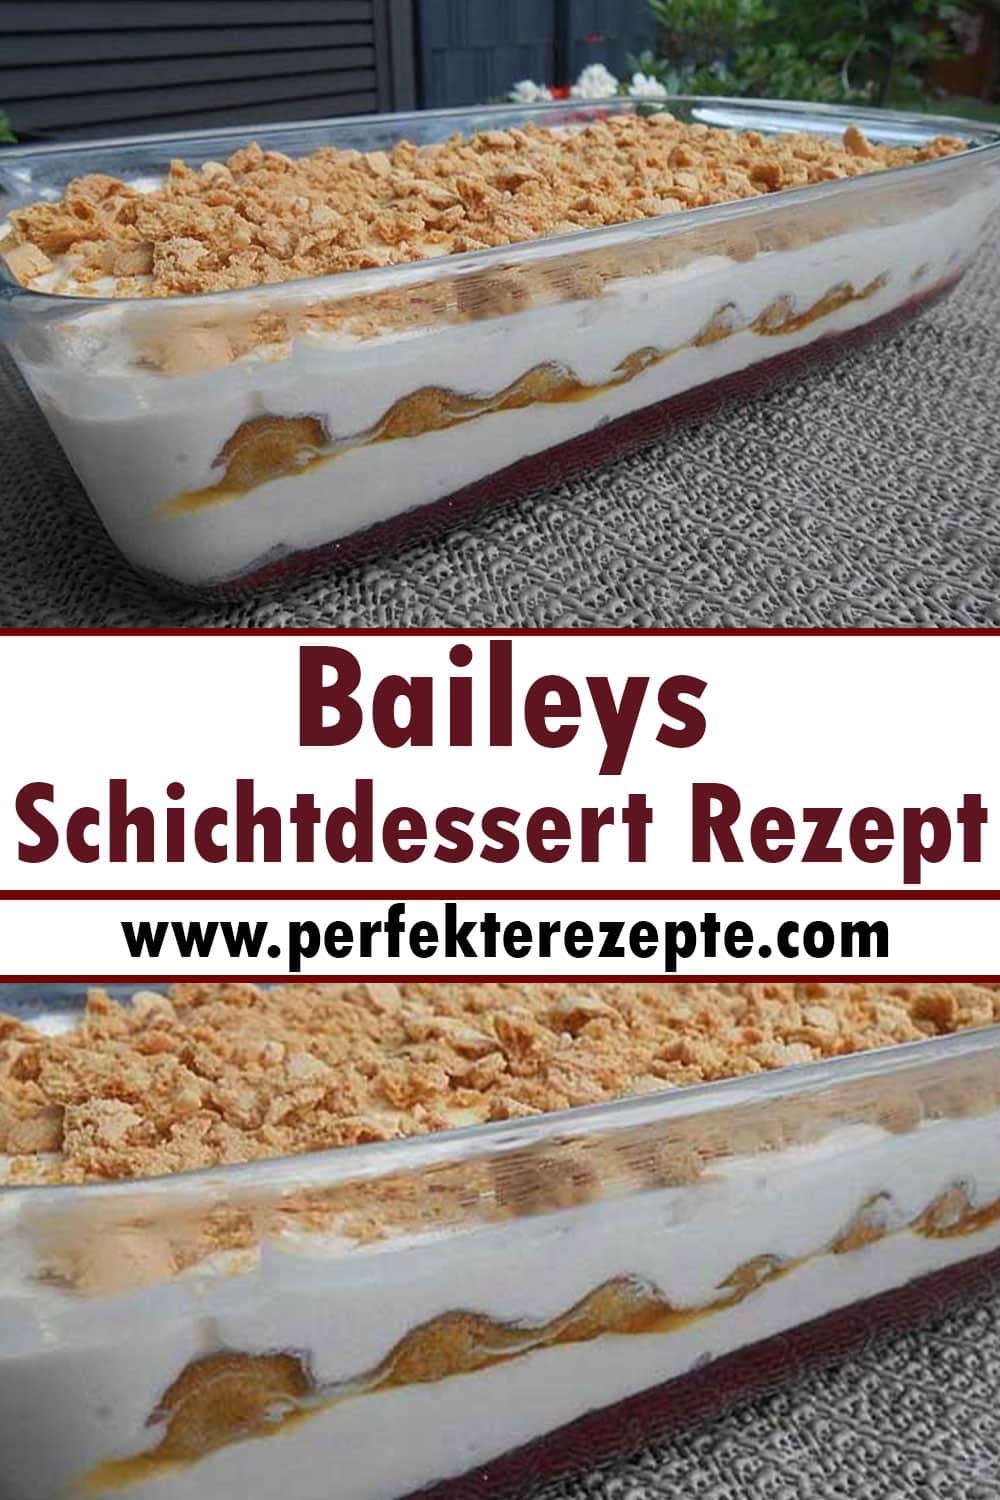 Baileys - Schichtdessert Rezept